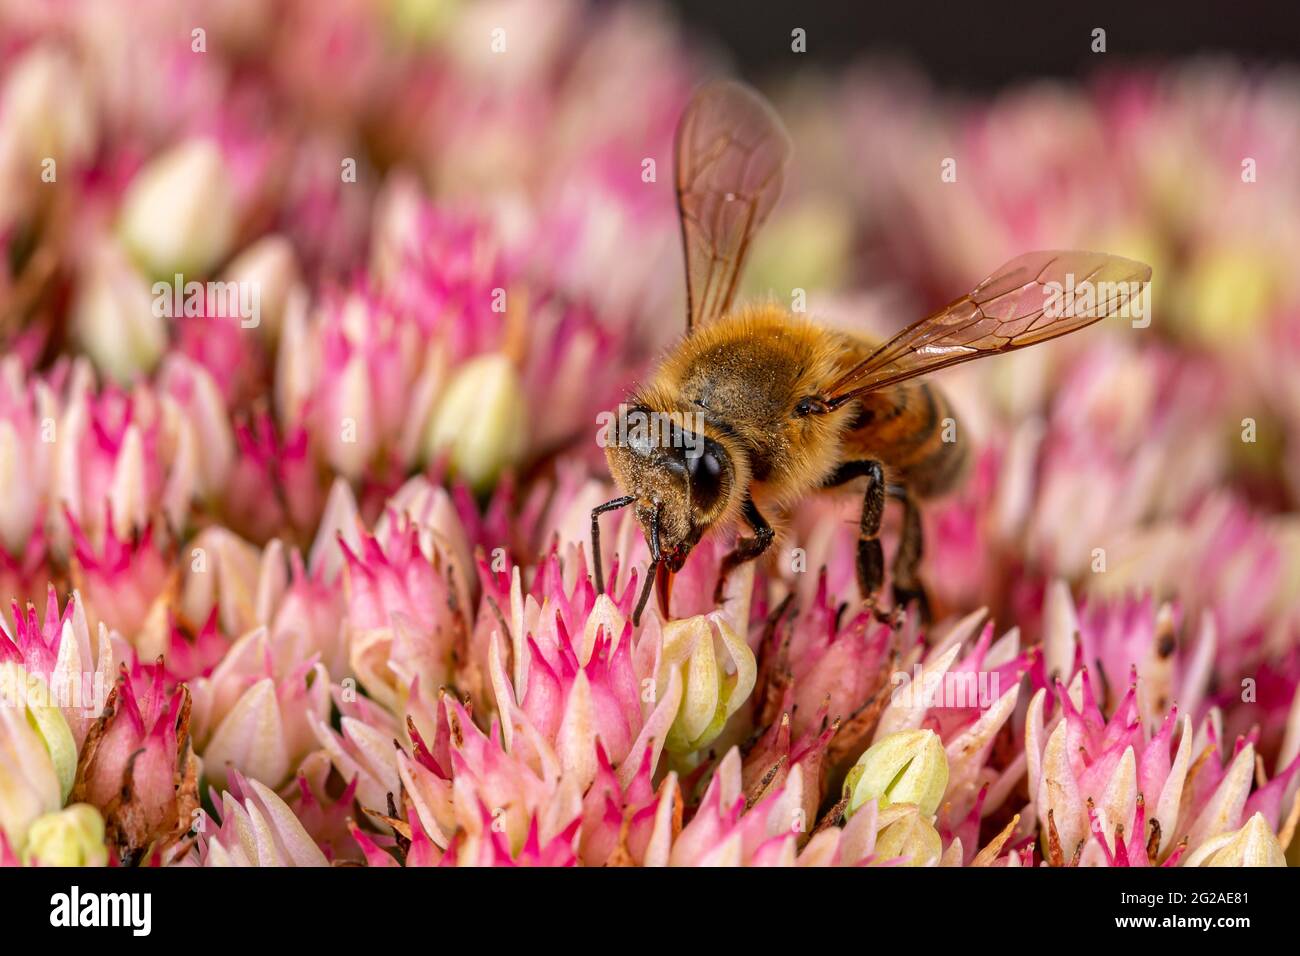 Nahaufnahme der Honigbiene auf Sedum Blume. Konzept des Insekten- und Wildtierschutzes, der Erhaltung von Lebensräumen und des Gartenblumengartens Stockfoto